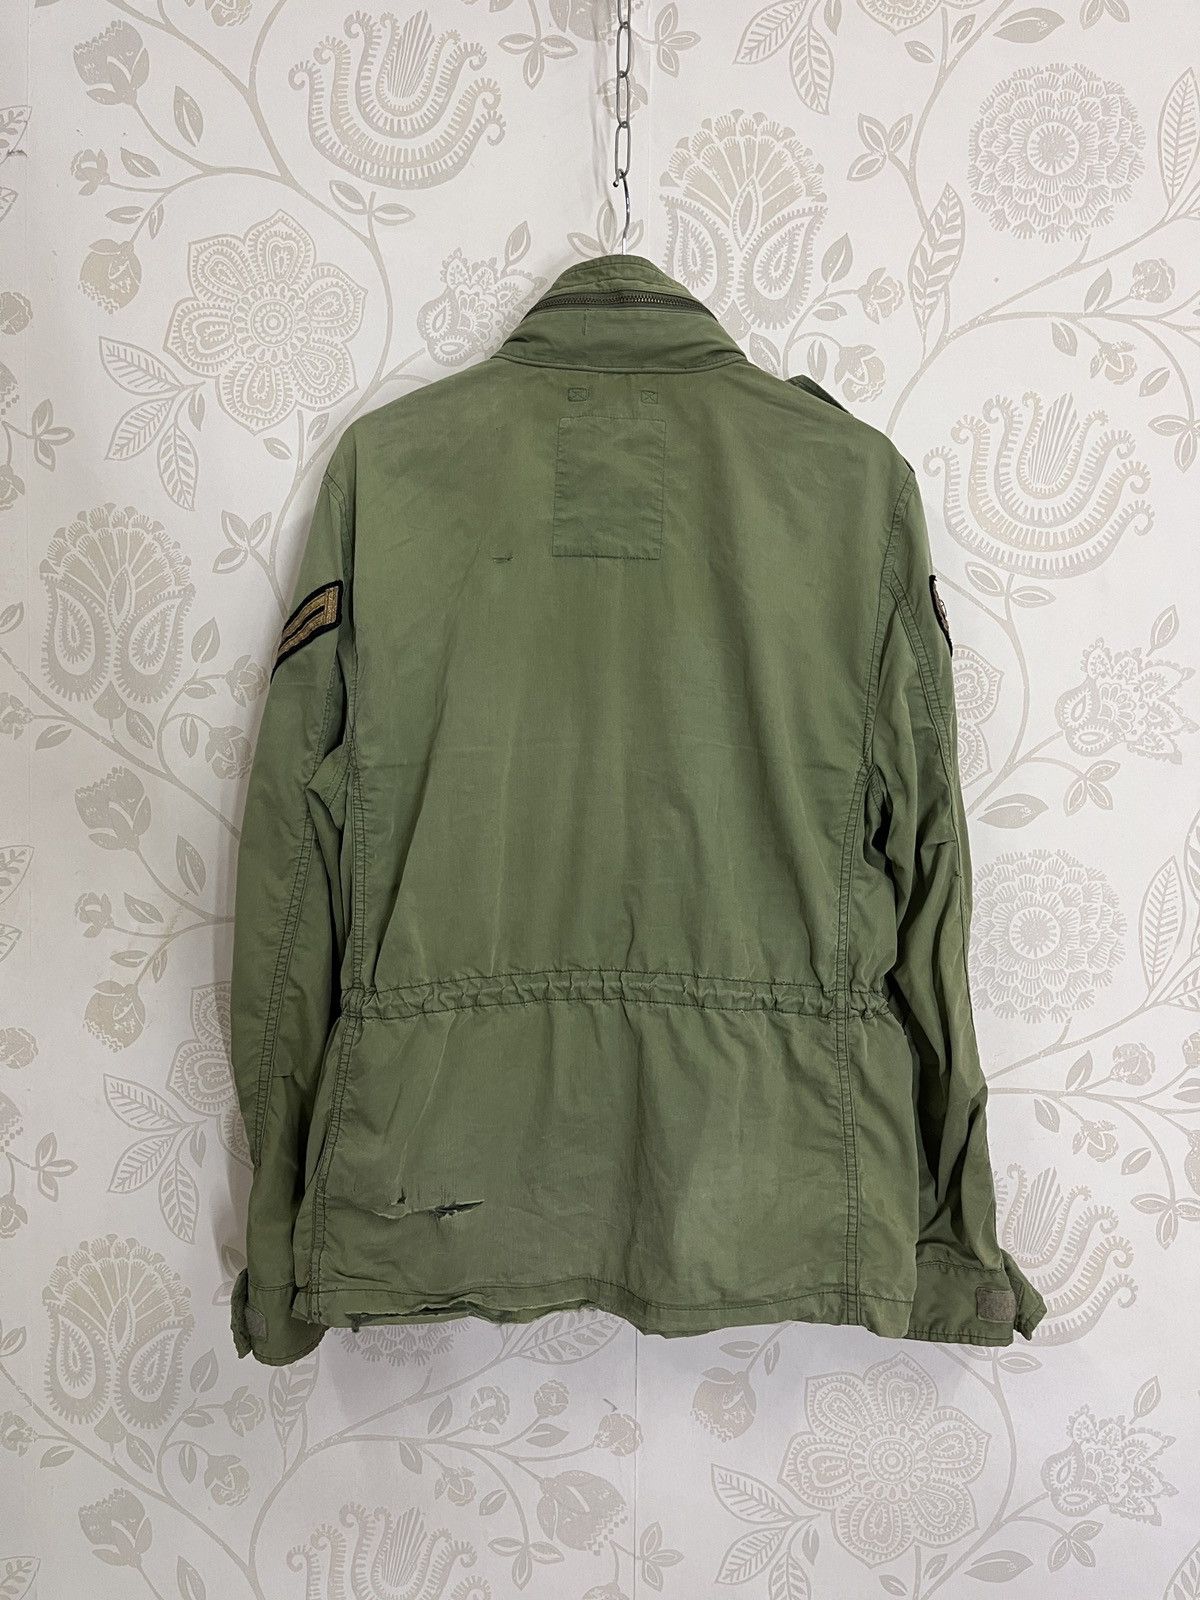 Vintage - Grails Ralph Lauren Denim & Supply Army Jacket - 3